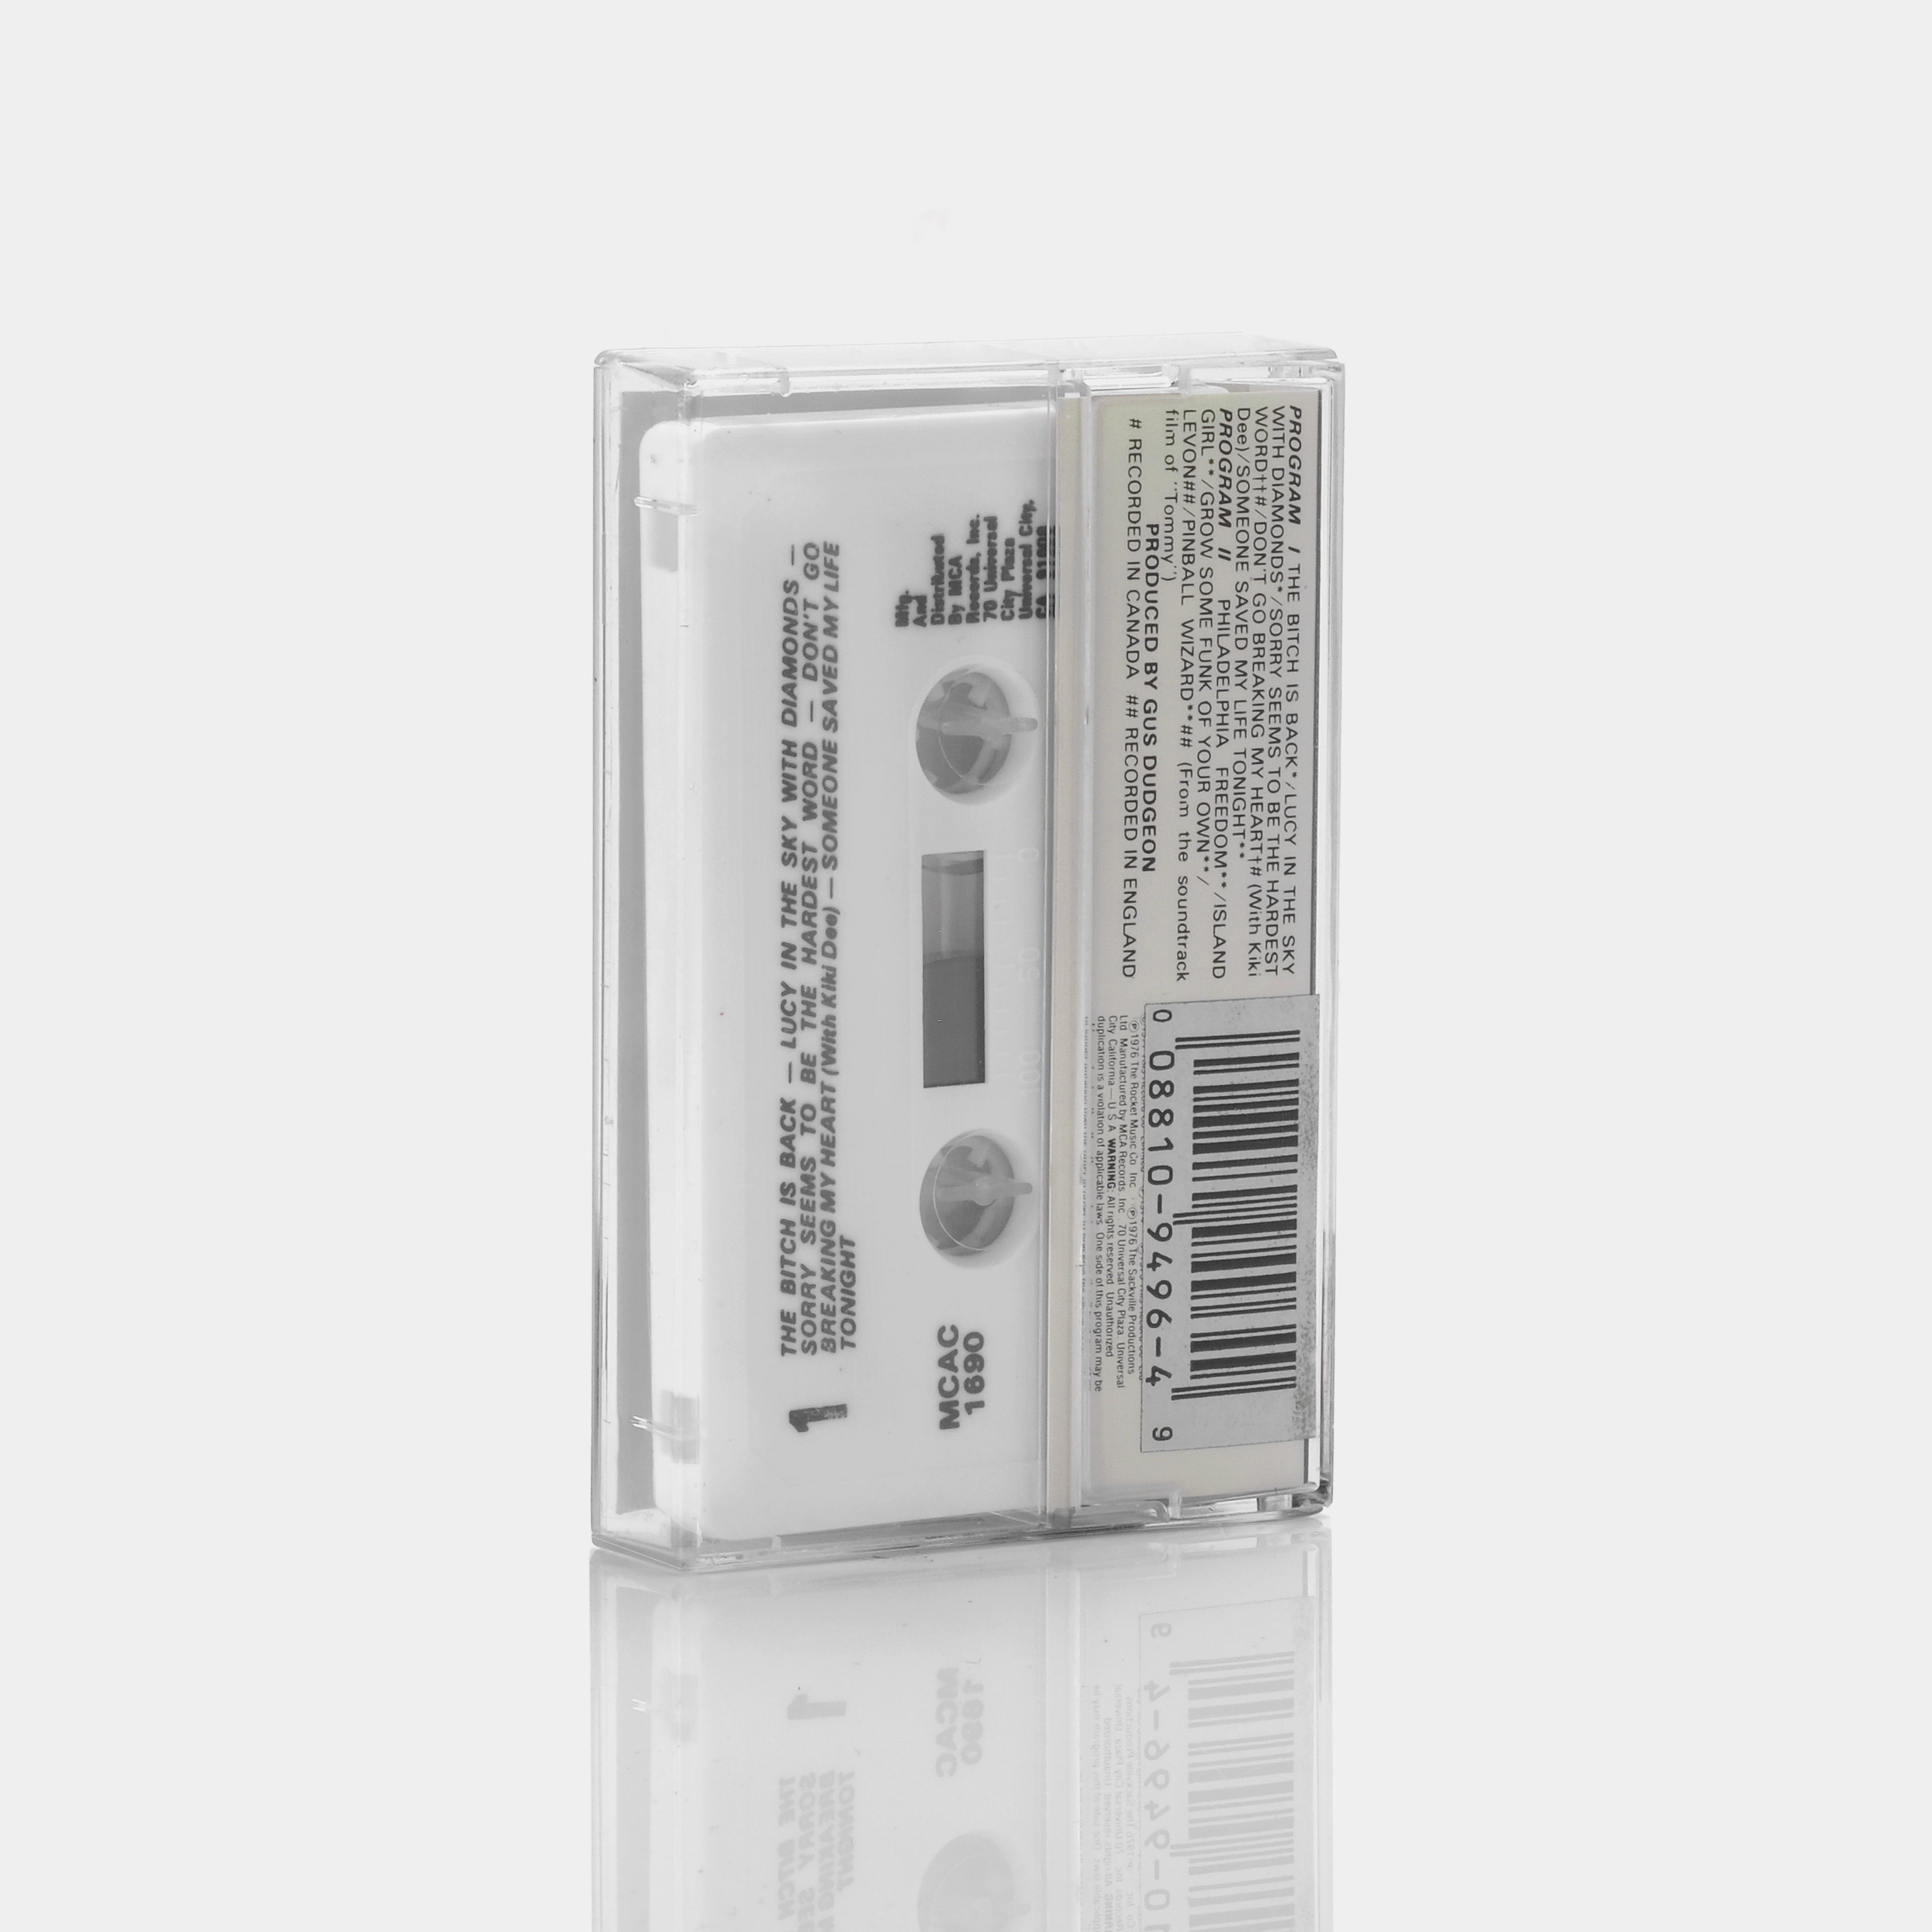 Elton John - Elton John's Greatest Hits Volume II Cassette Tape